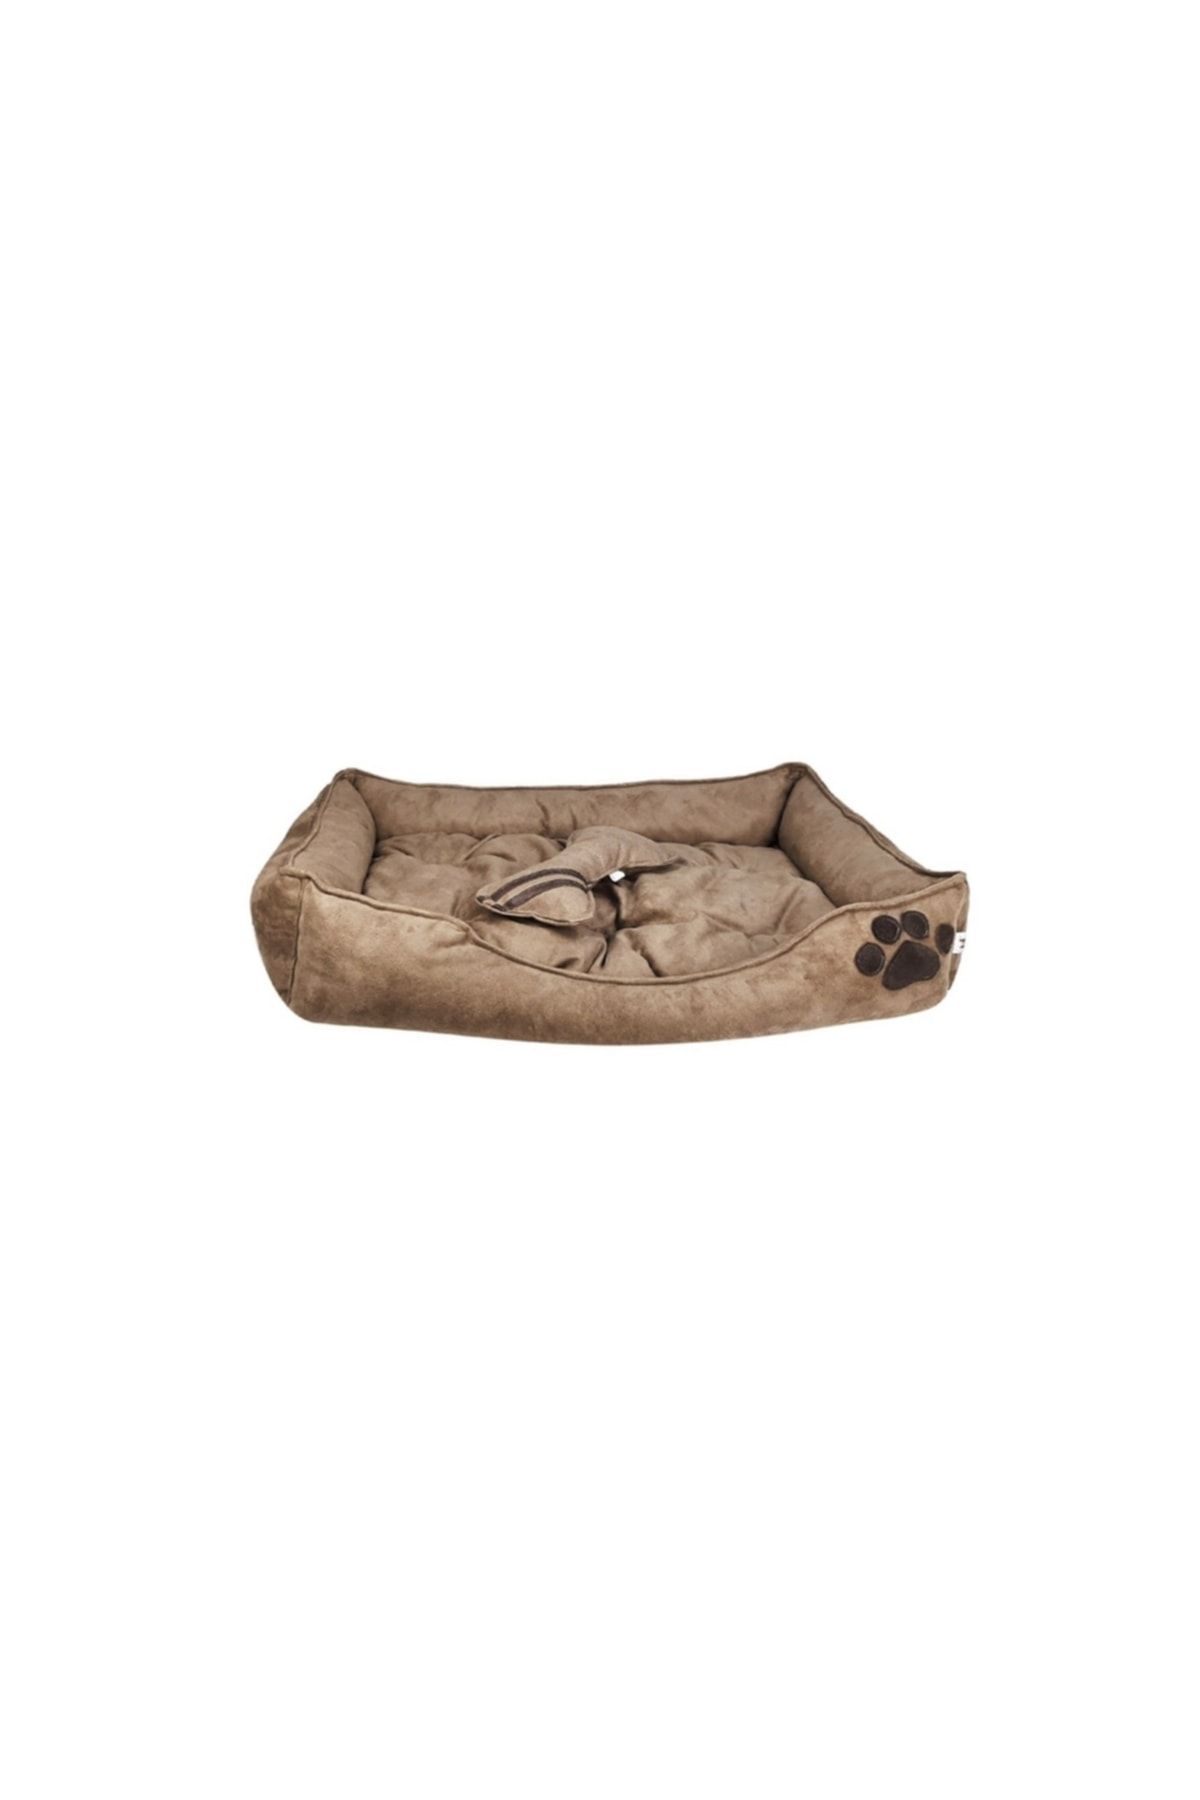 Patili Evler Koyu Vizon Renk Nubuk Büyük Boy Köpek Yatağı 80x110 cm Kemik Yastıklı